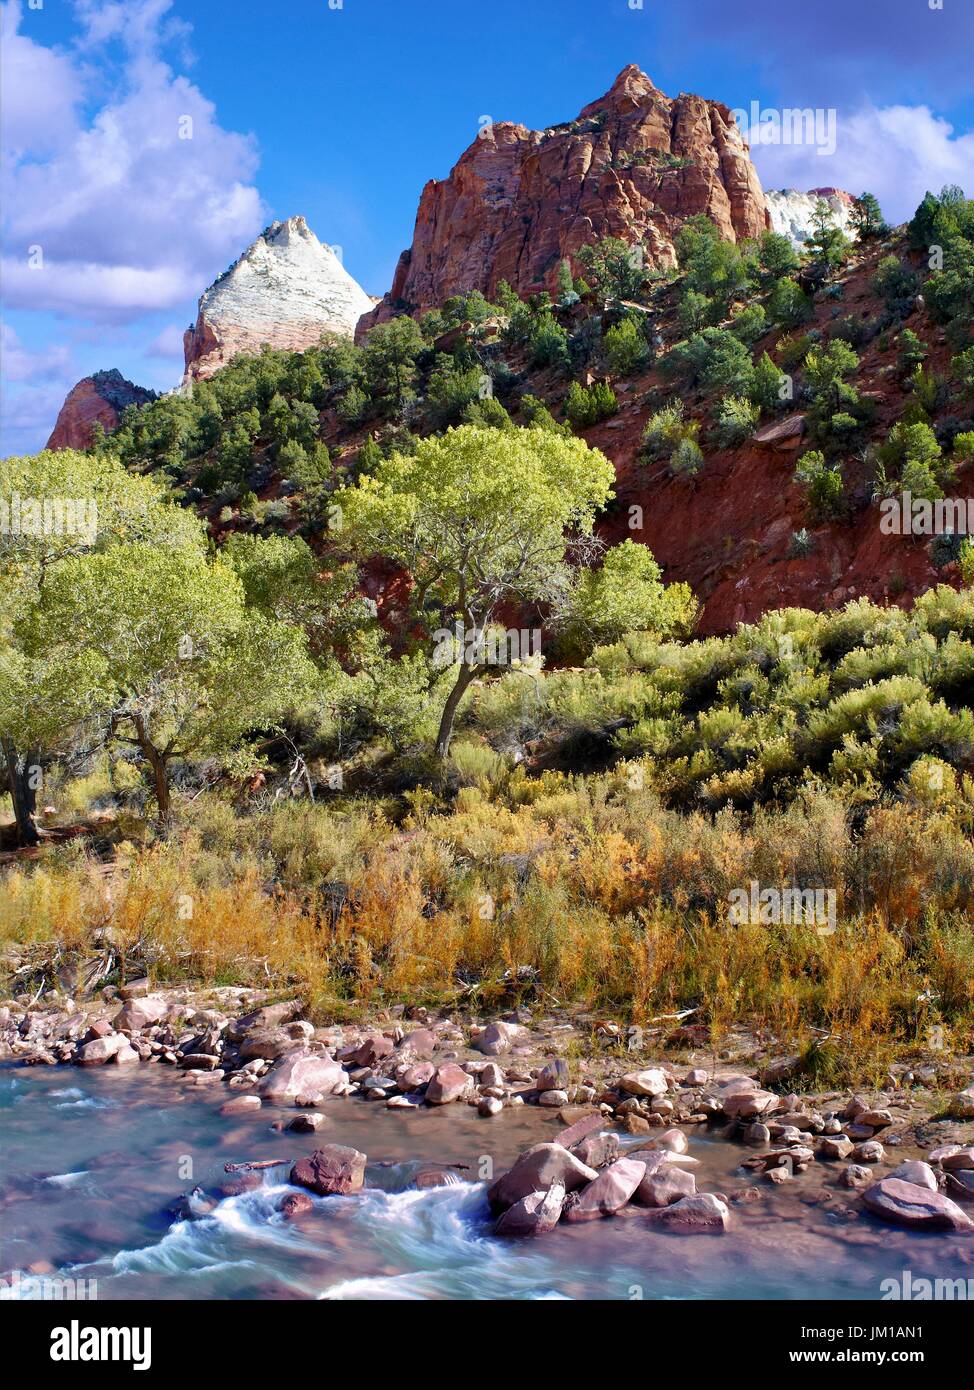 Una vista del paisaje montañoso del parque nacional de Zion, Utah, EE.UU. durante la temporada de otoño Foto de stock